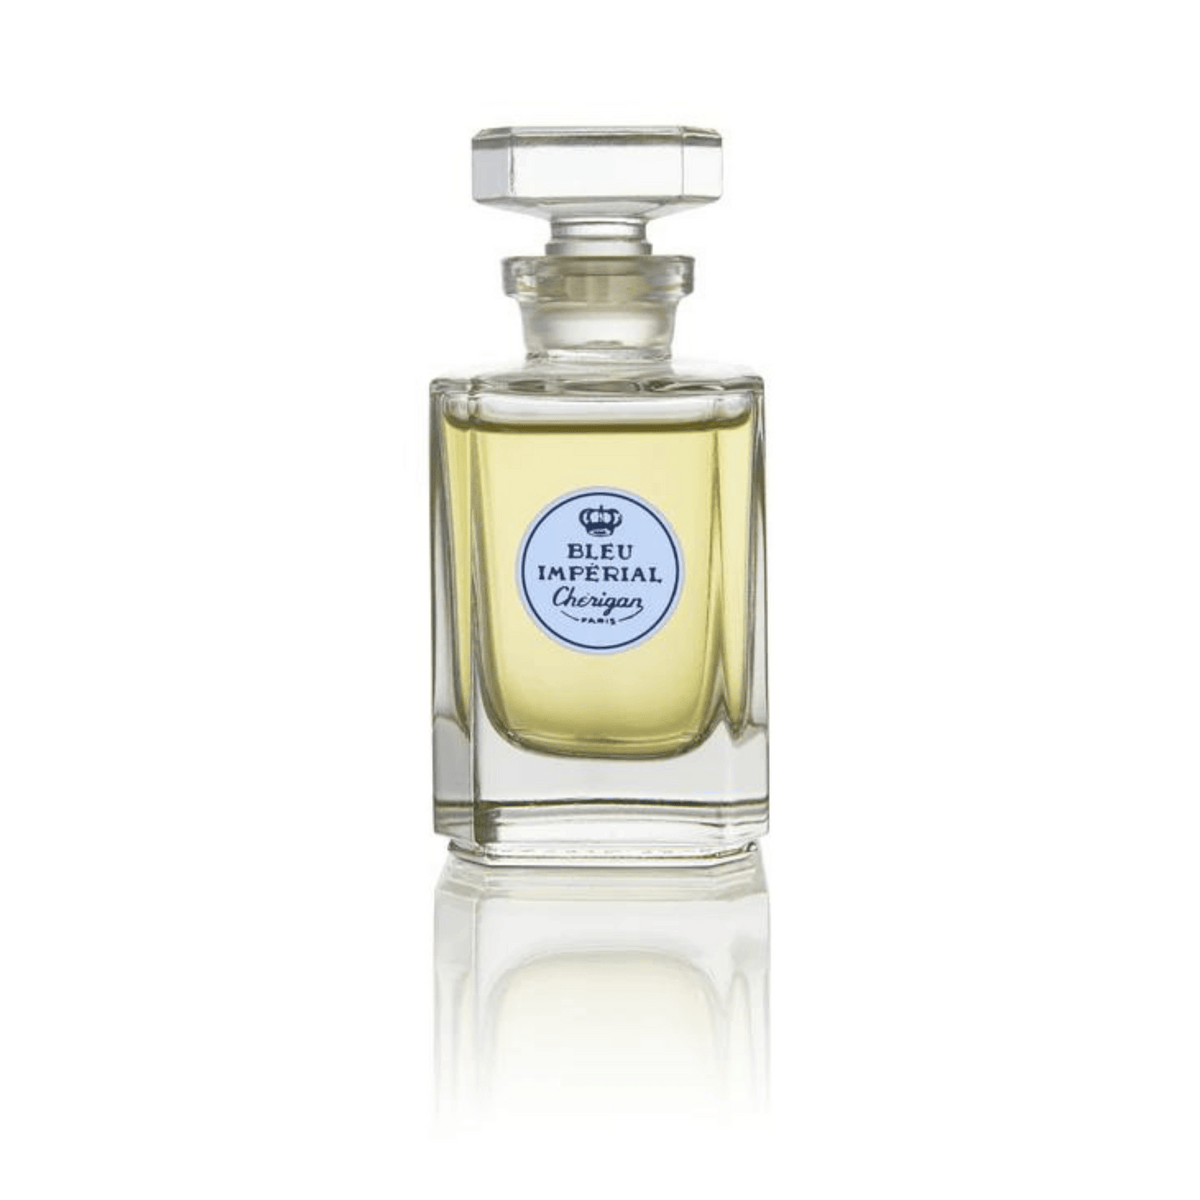 Primary Image of Imperial Extrait de Parfum